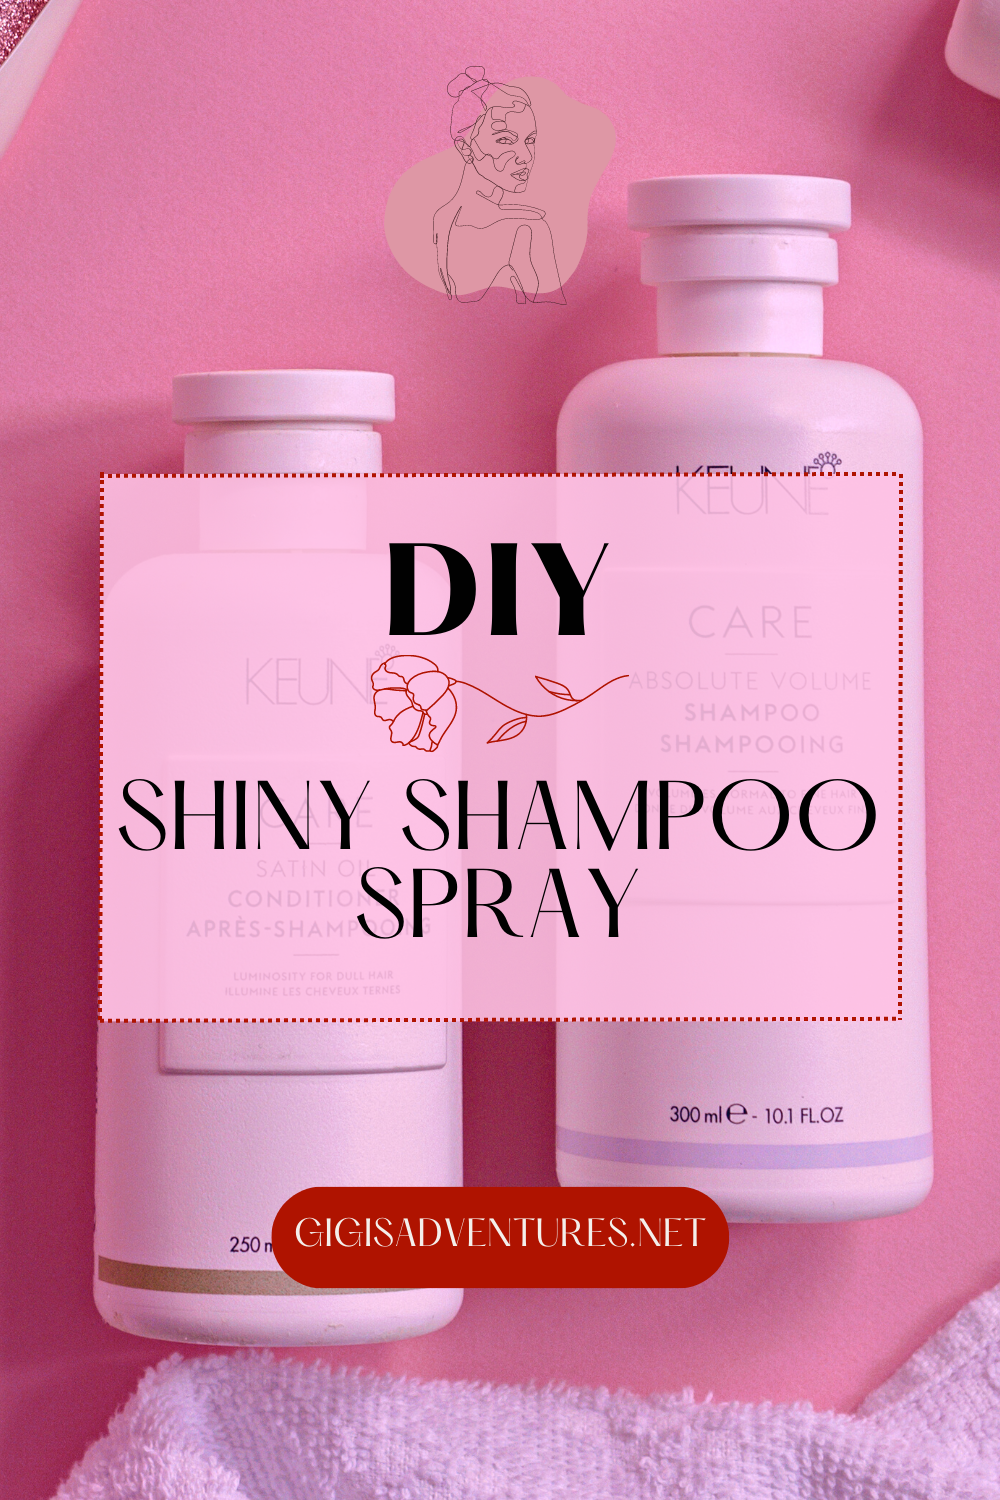 DIY Shiny Shampoo Spray for Super Silky, Shiny Hair | DIY Shampoo, DIY Shampoo Spray